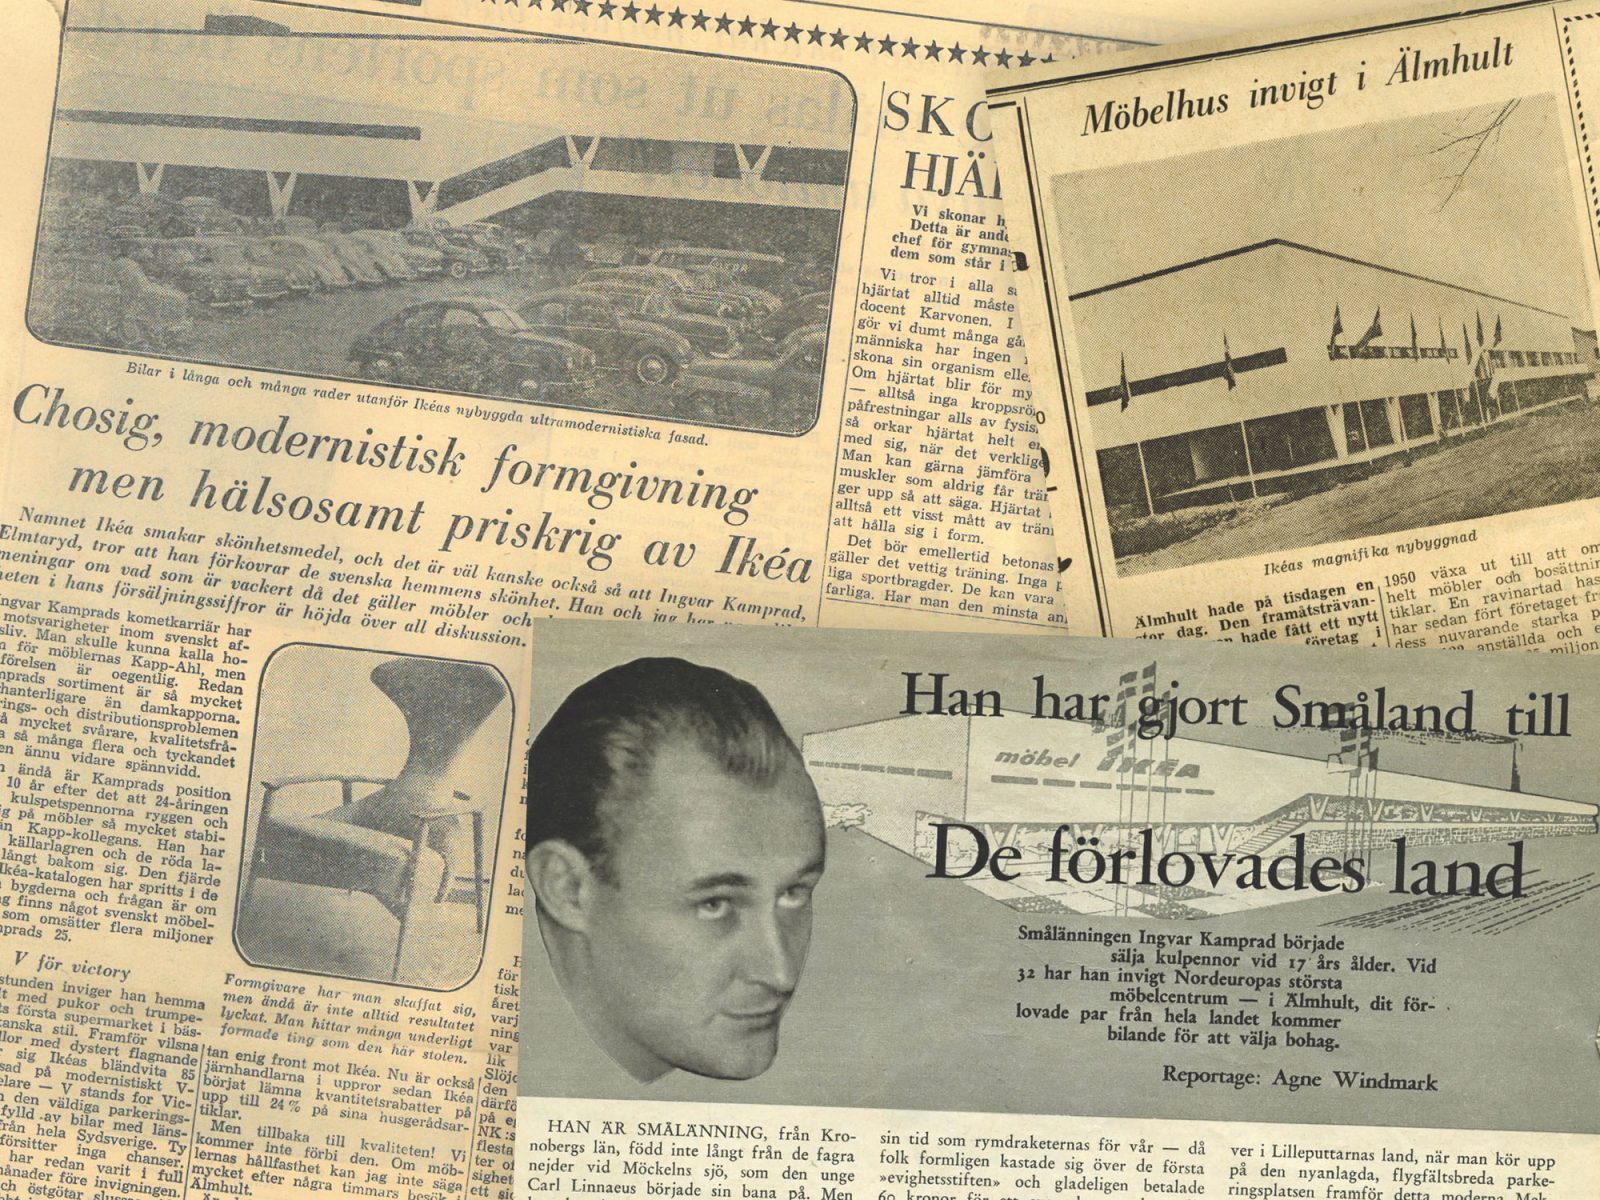 Verschiedene Zeitungsausschnitte aus den 1950ern mit Artikeln über die Eröffnung von IKEA in Älmhult 1958.